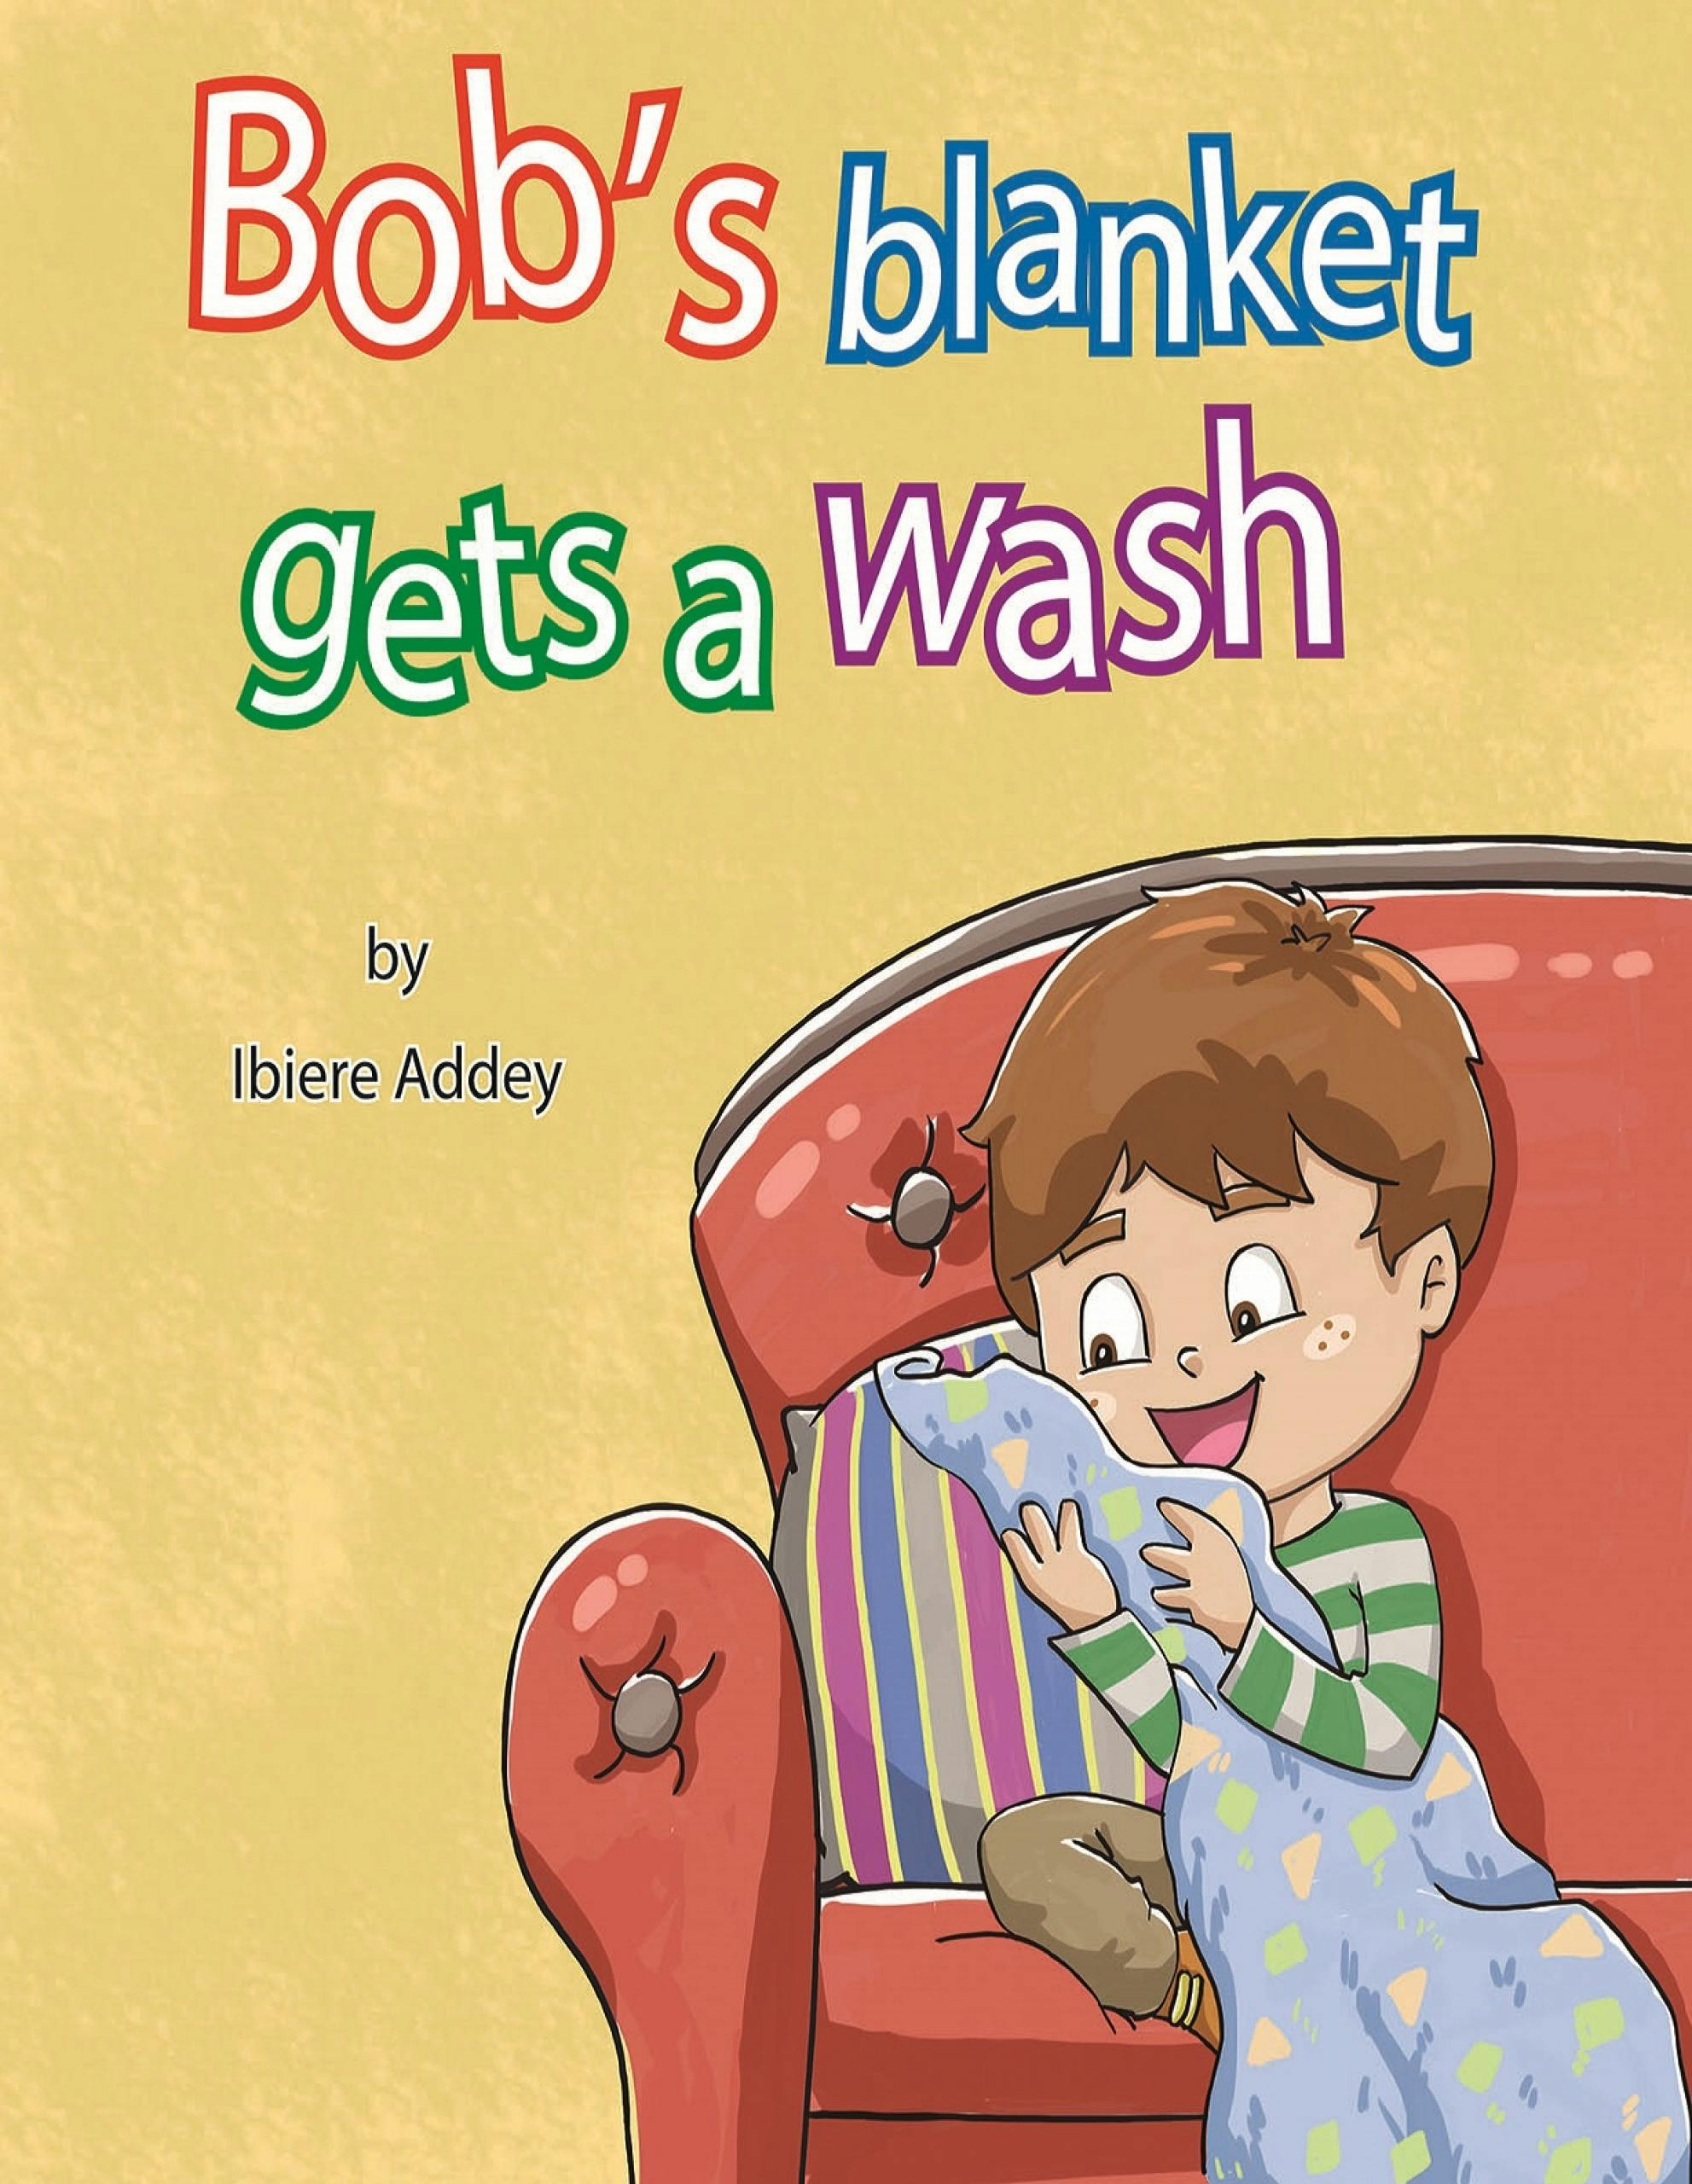 Bob's Blanket gets a wash - Ibiere Addey